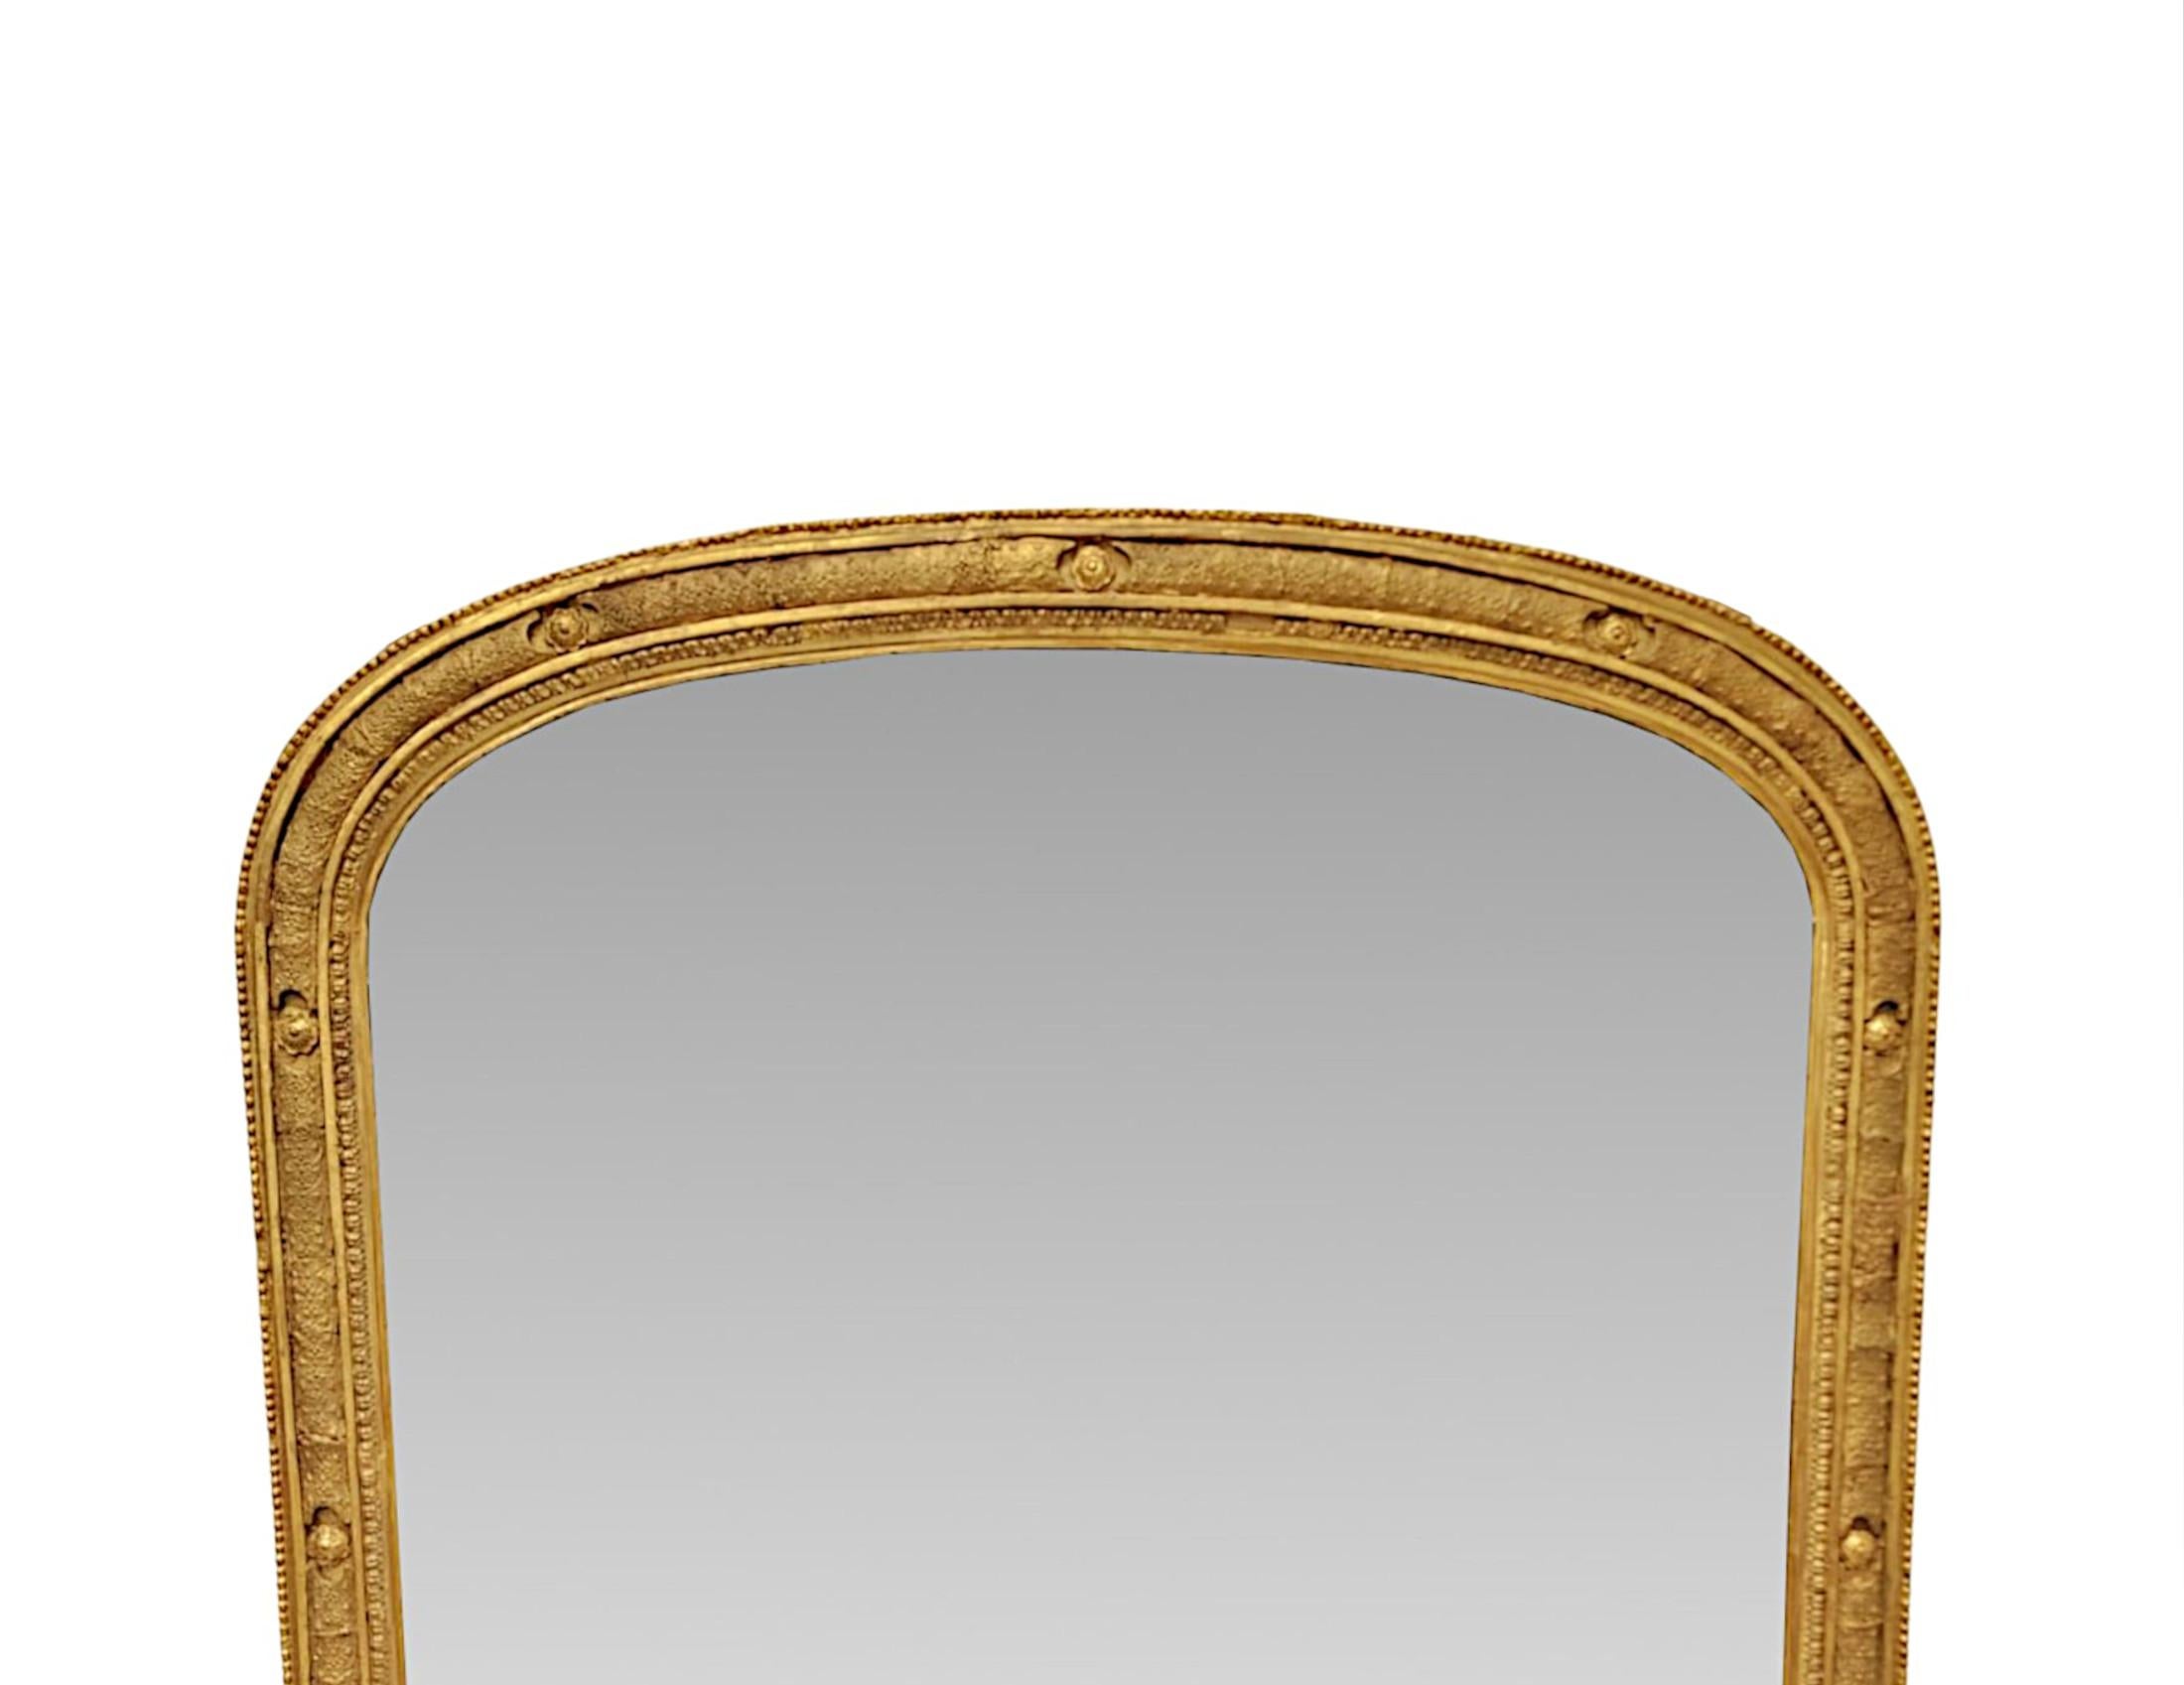 Très beau miroir à trumeau en bois doré du XIXe siècle, d'une élégante simplicité, d'une qualité exceptionnelle et aux proportions soignées.  La plaque de verre miroir en forme d'arceau est placée dans un cadre en bois doré magnifiquement sculpté,